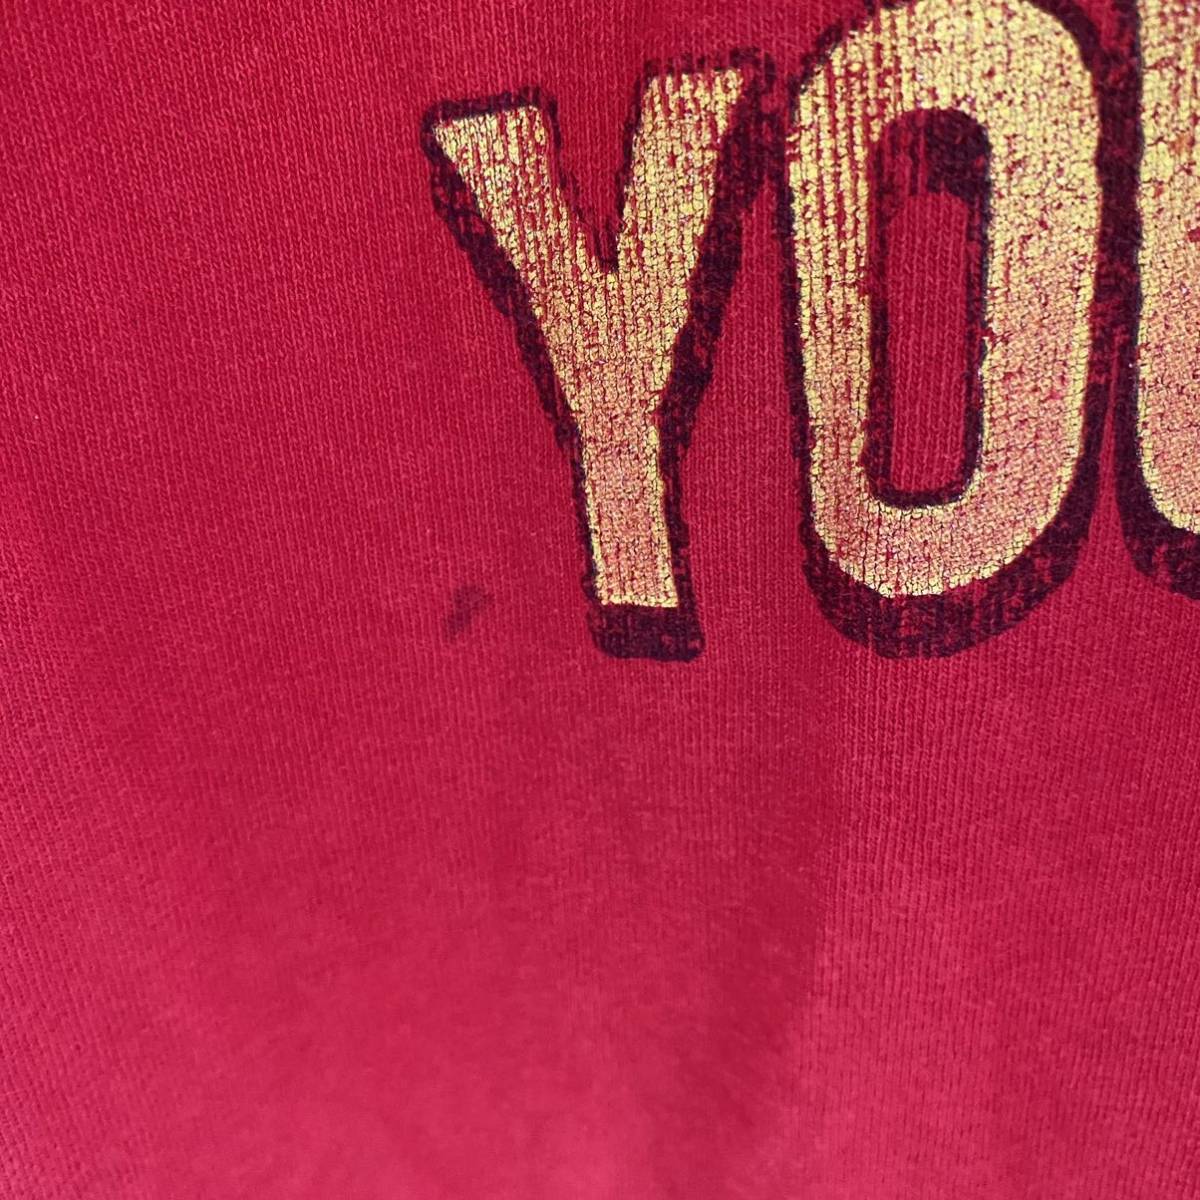 超激レア SEGAセガソニックtシャツ半袖メンズxlXL赤レッドビンテージ 